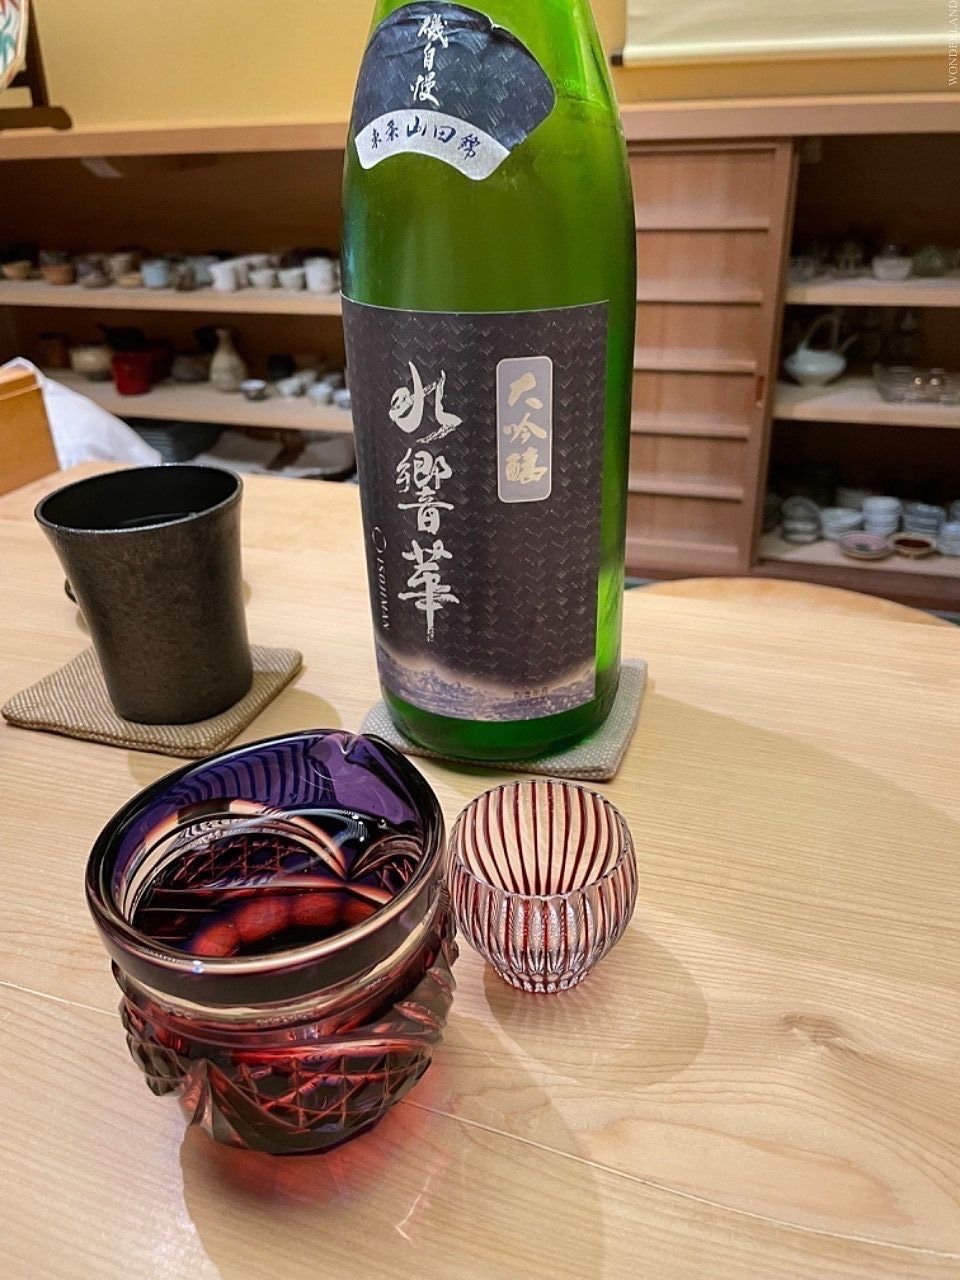 いろいろな日本酒、違う銘柄を楽しみました